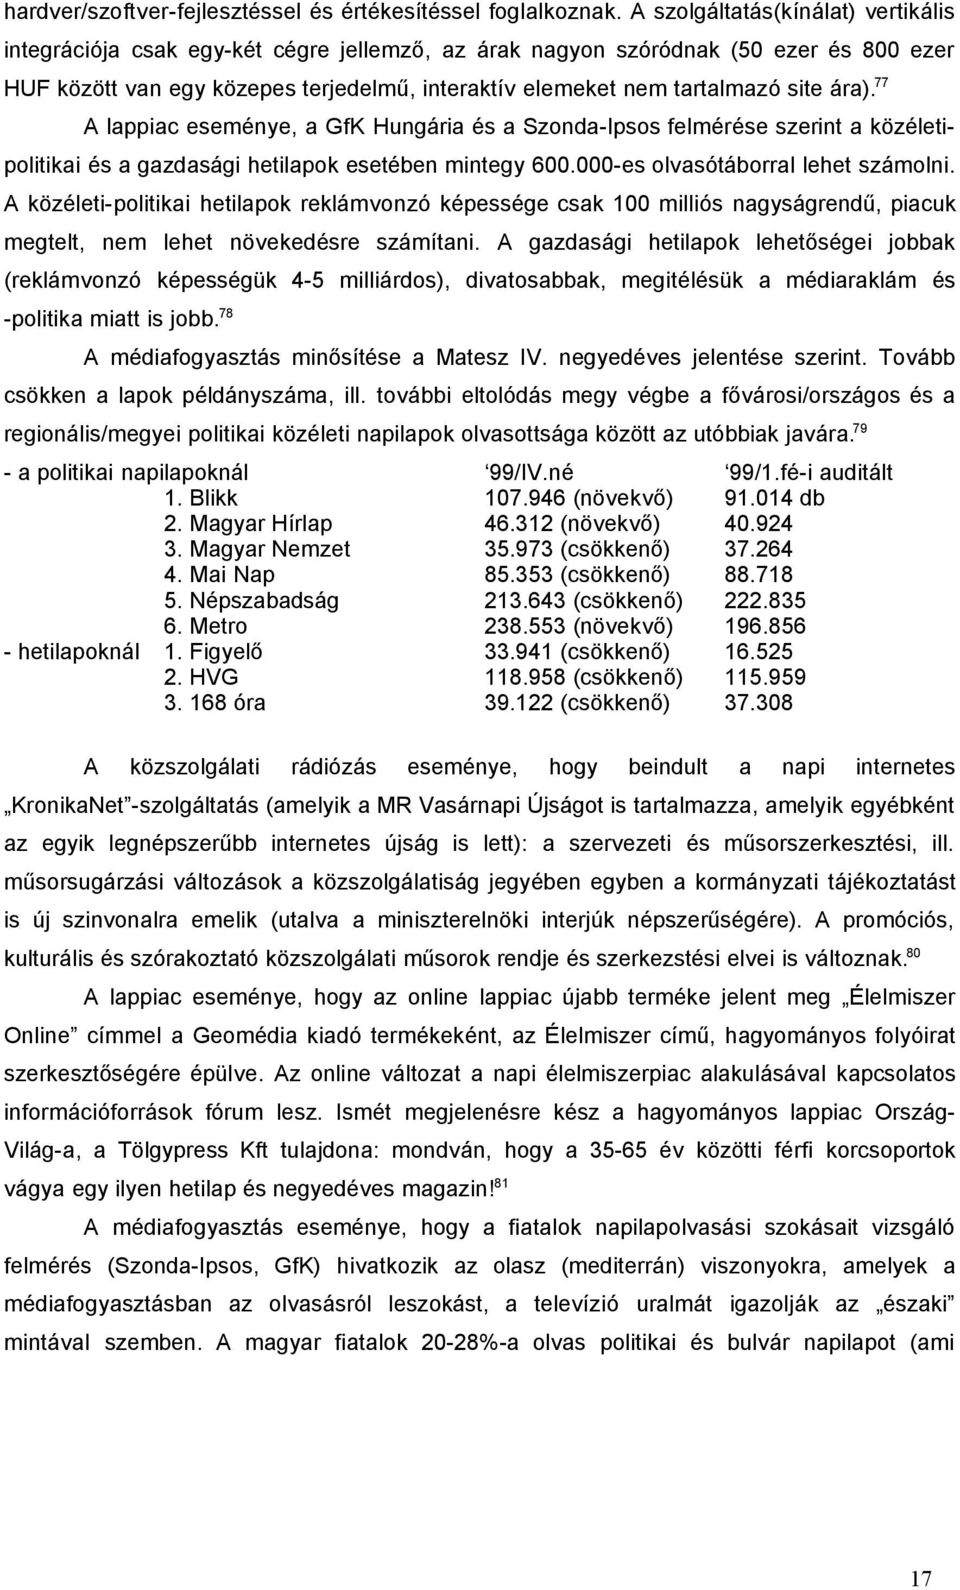 site ára). 77 A lappiac eseménye, a GfK Hungária és a Szonda-Ipsos felmérése szerint a közéletipolitikai és a gazdasági hetilapok esetében mintegy 600.000-es olvasótáborral lehet számolni.